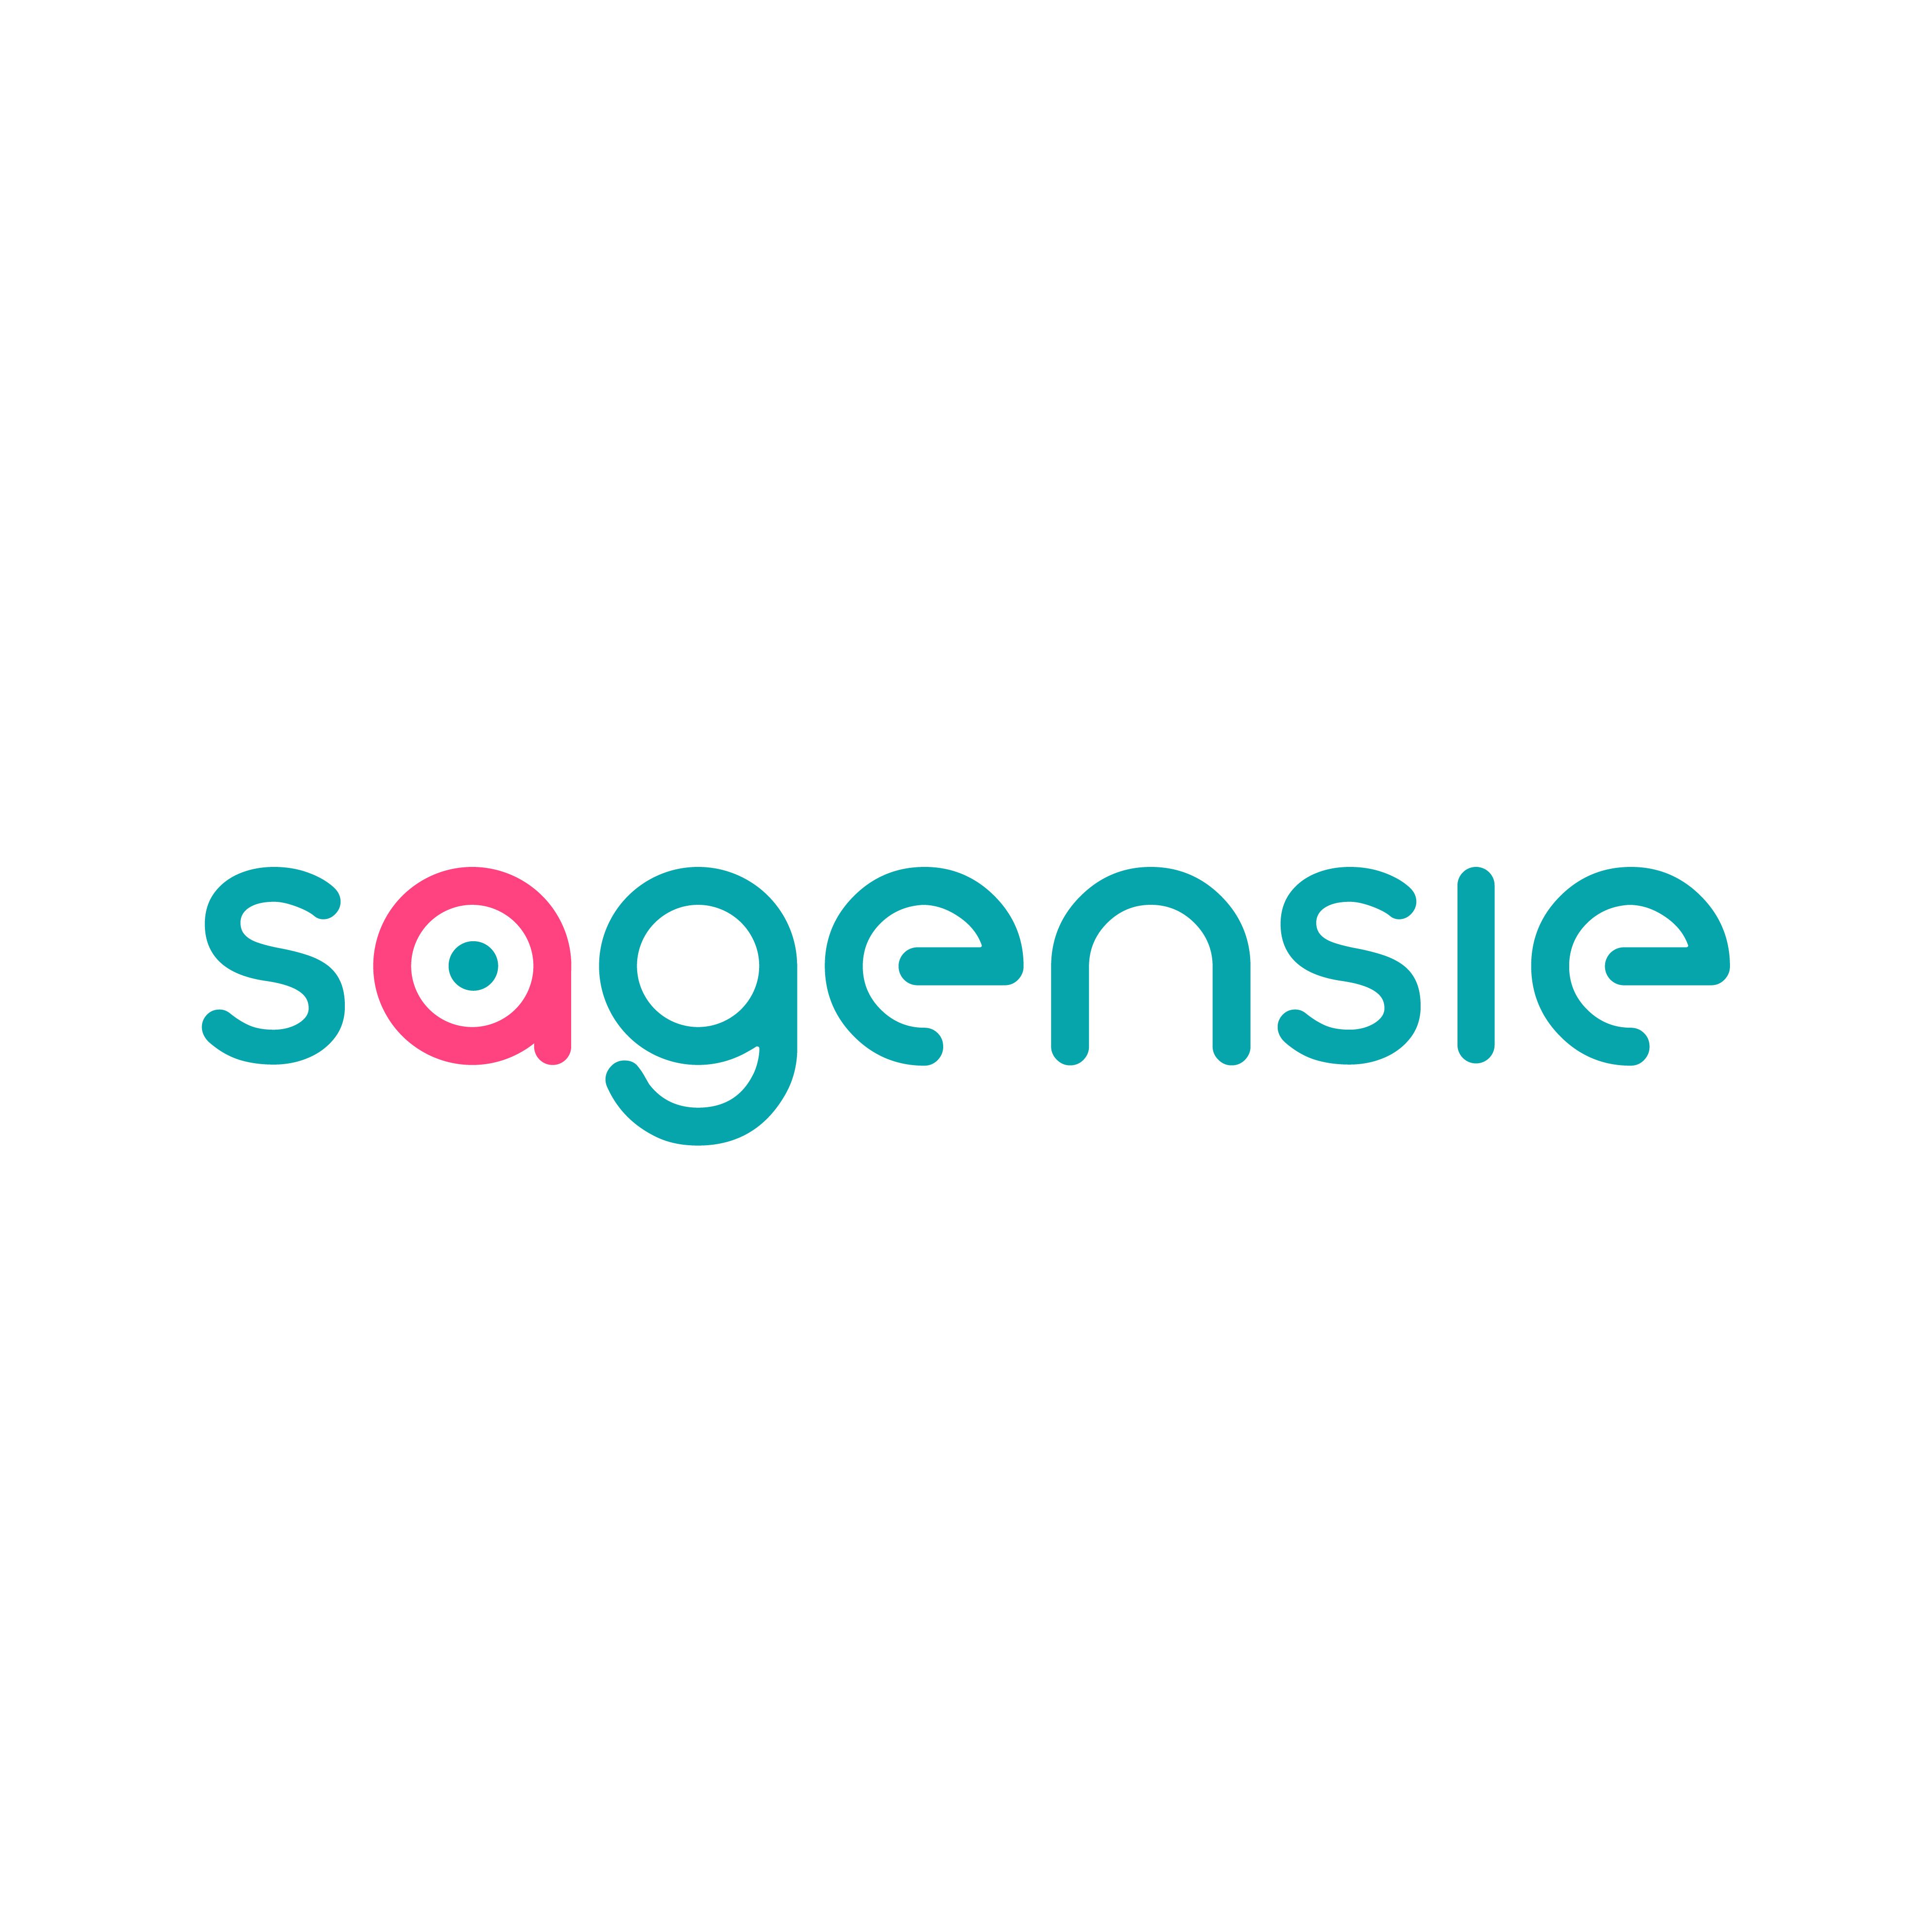 Sagensie Corporation